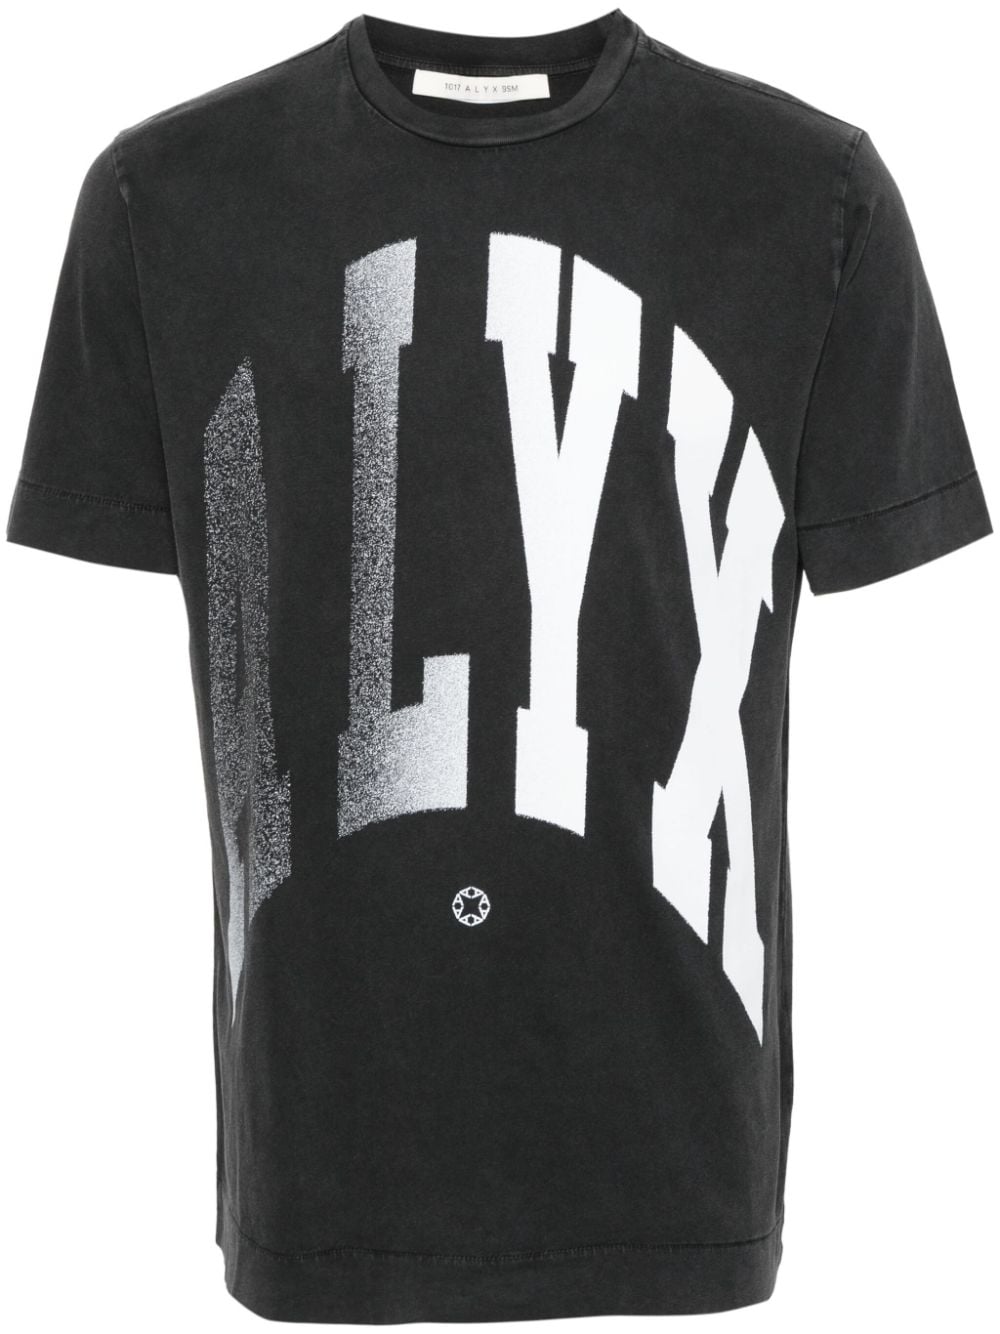 1017 ALYX 9SM Alyx cotton T-shirt - Grey von 1017 ALYX 9SM